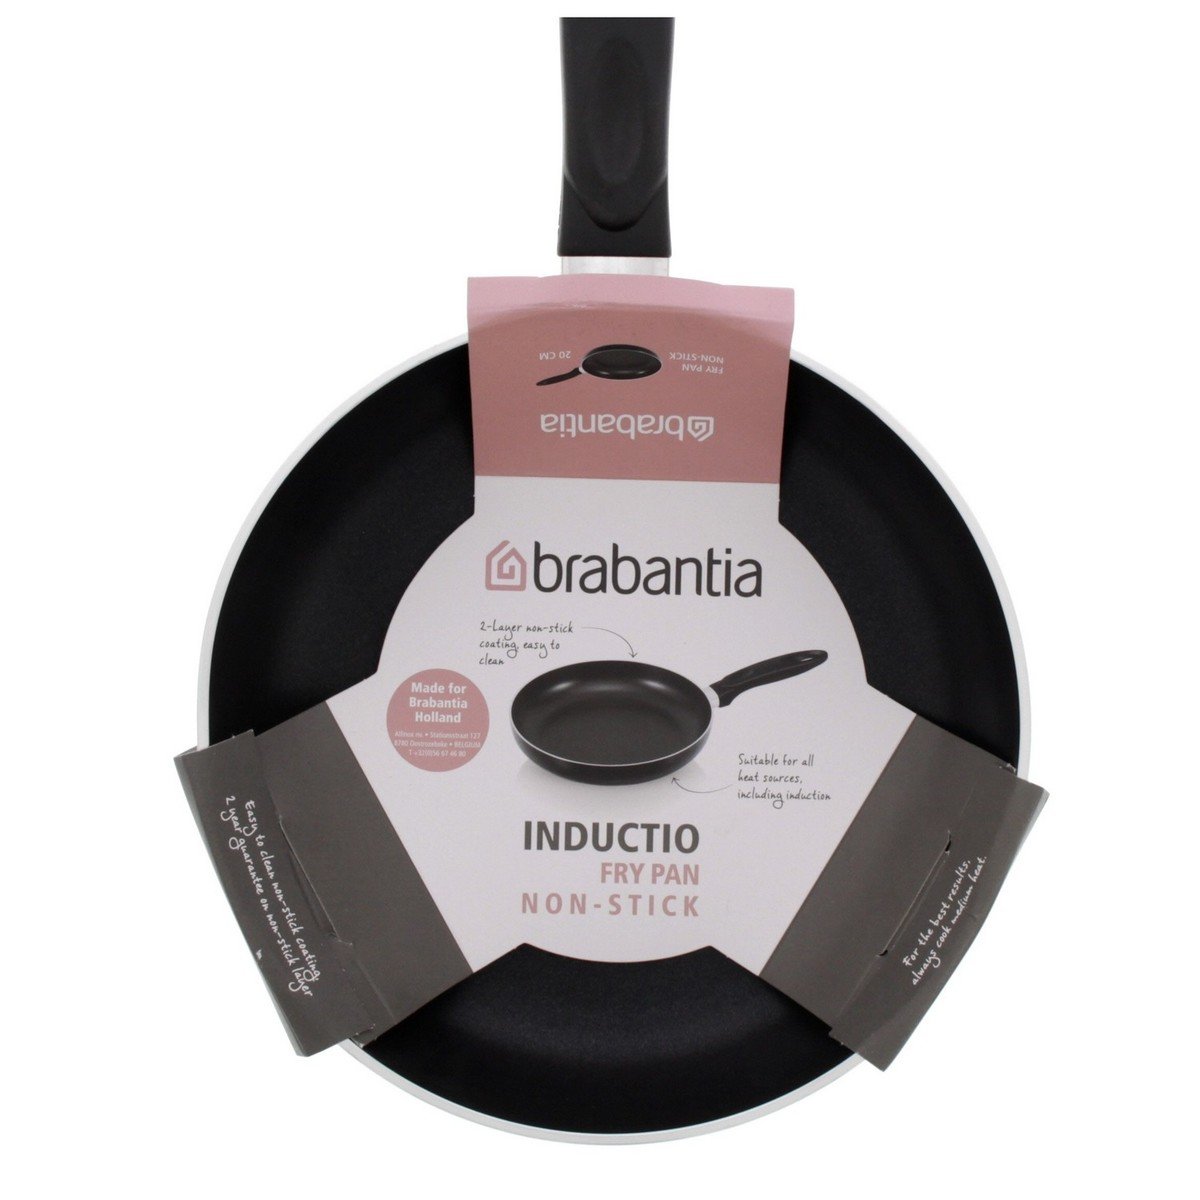 Brabantia Non-Stick Fry Pan, 30 cm, BR10920